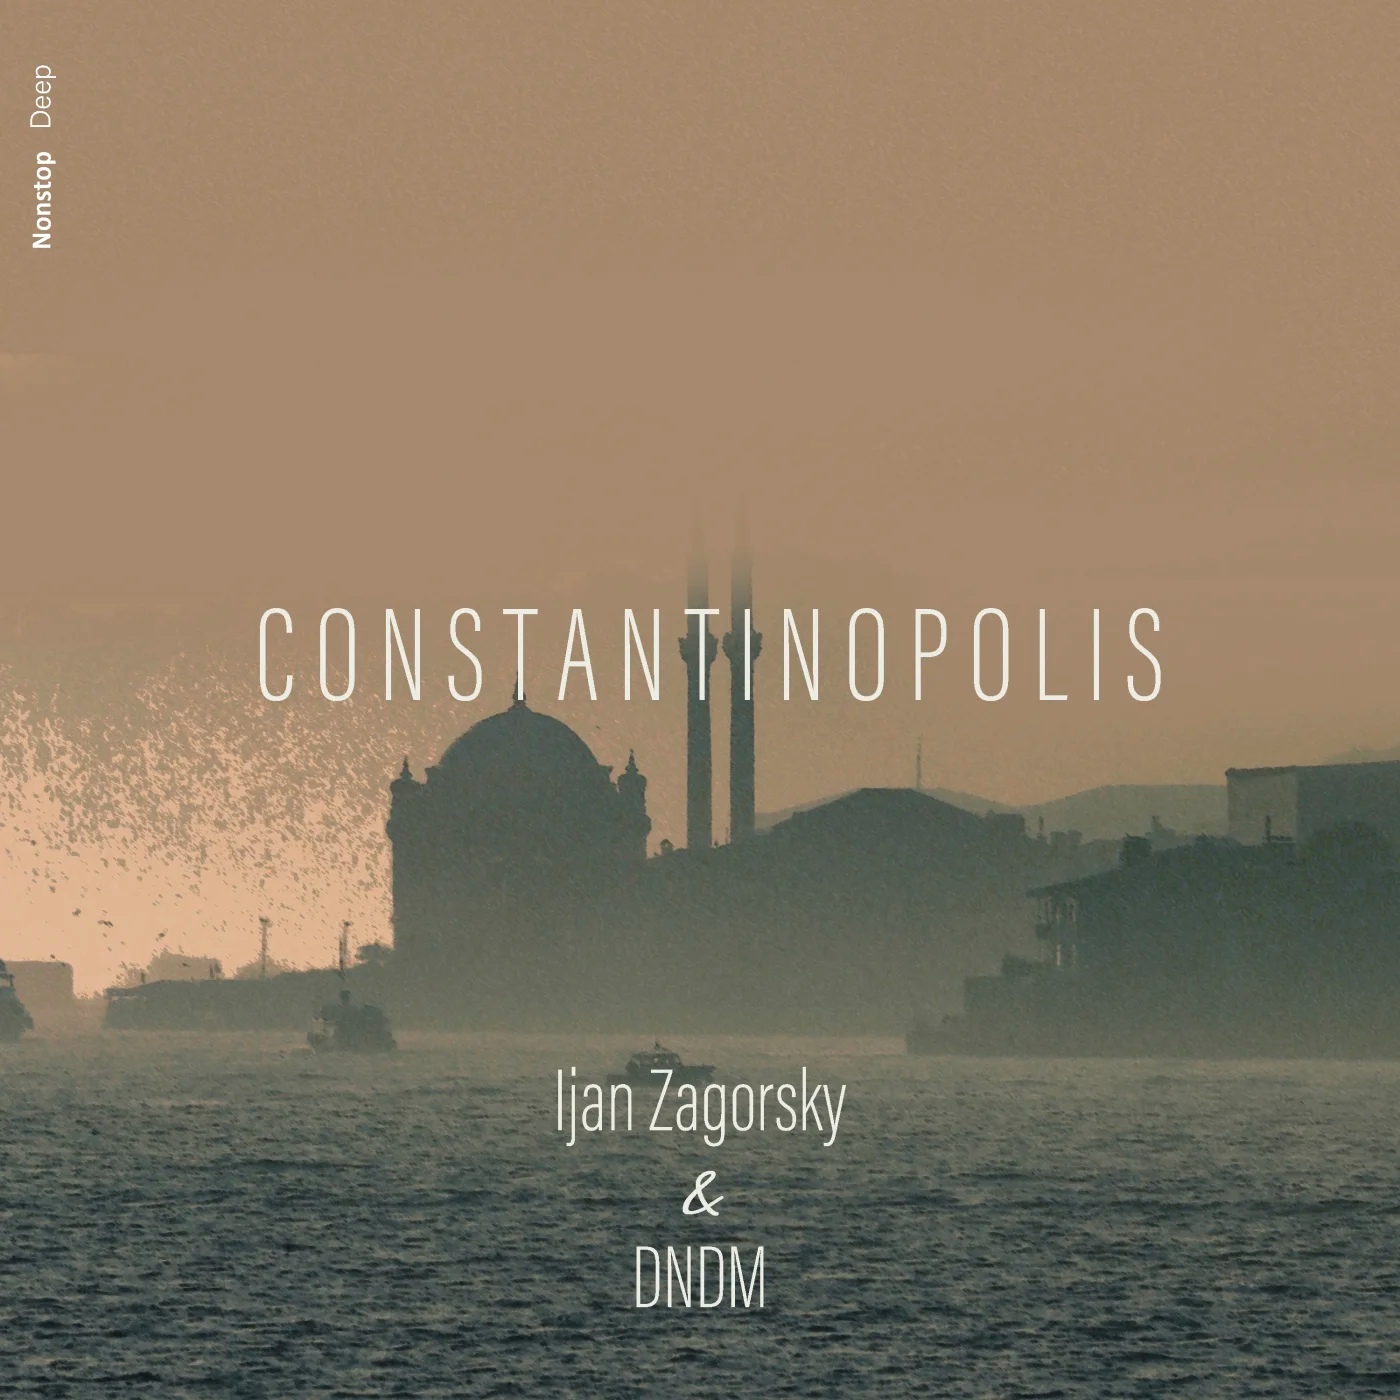 Ijan Zagorsky & DNDM - Constantinopolis (Original Mix)